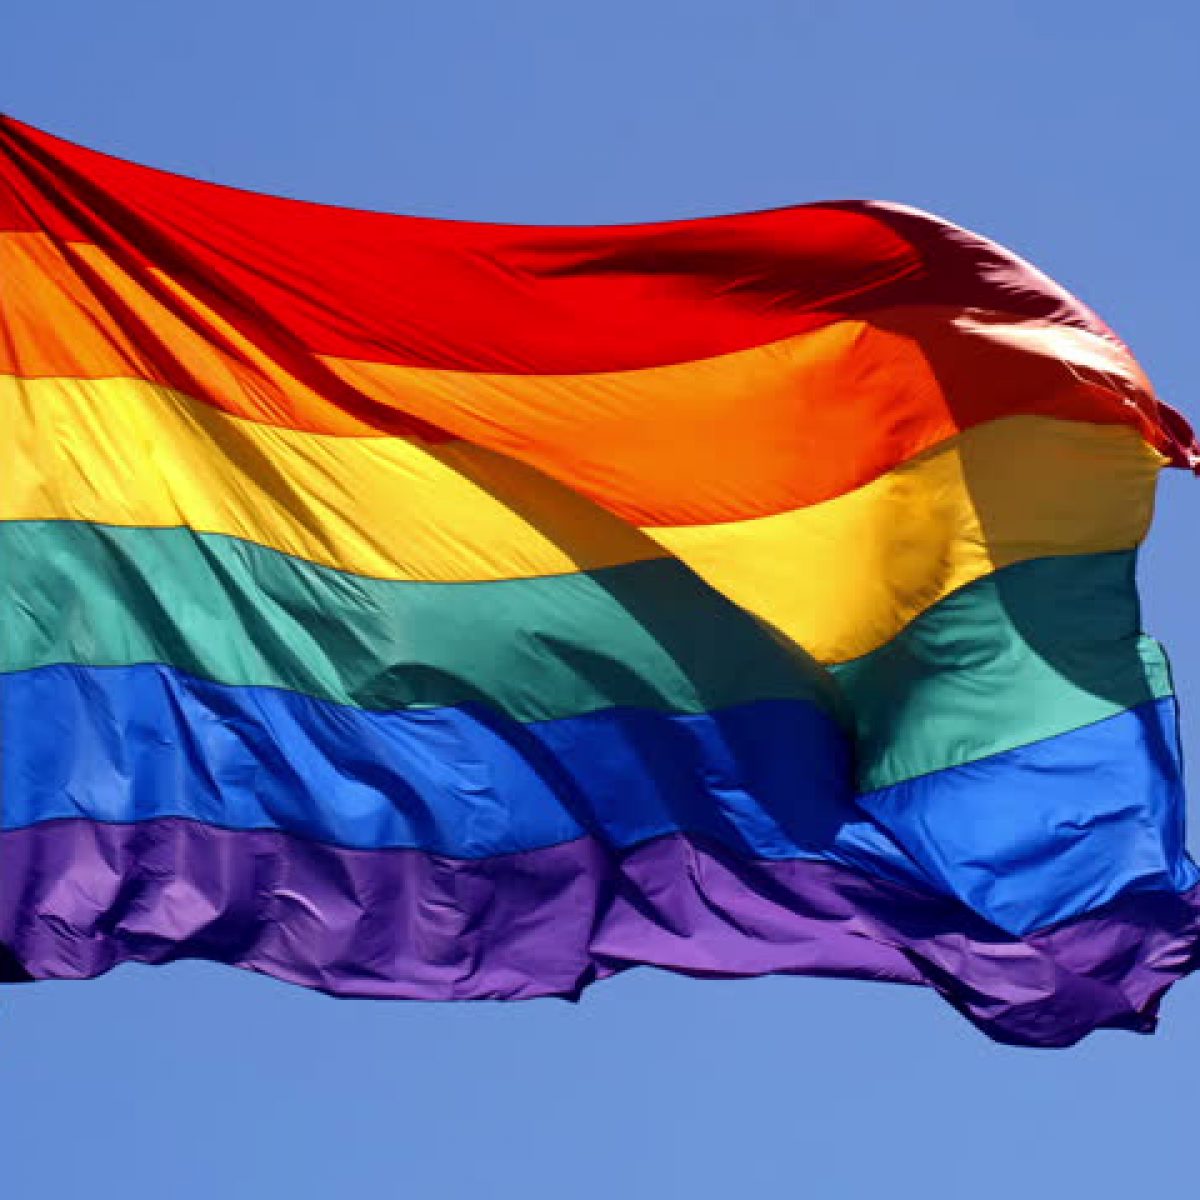 Cộng đồng LGBT Vietnam đang trở nên ngày càng mạnh mẽ và đầy tự tin hơn trong việc thể hiện bản thân và yêu thương đồng tính. Hình ảnh liên quan đến cộng đồng này sẽ giúp bạn hiểu thêm về đa dạng và sự đồng cảm của con người.